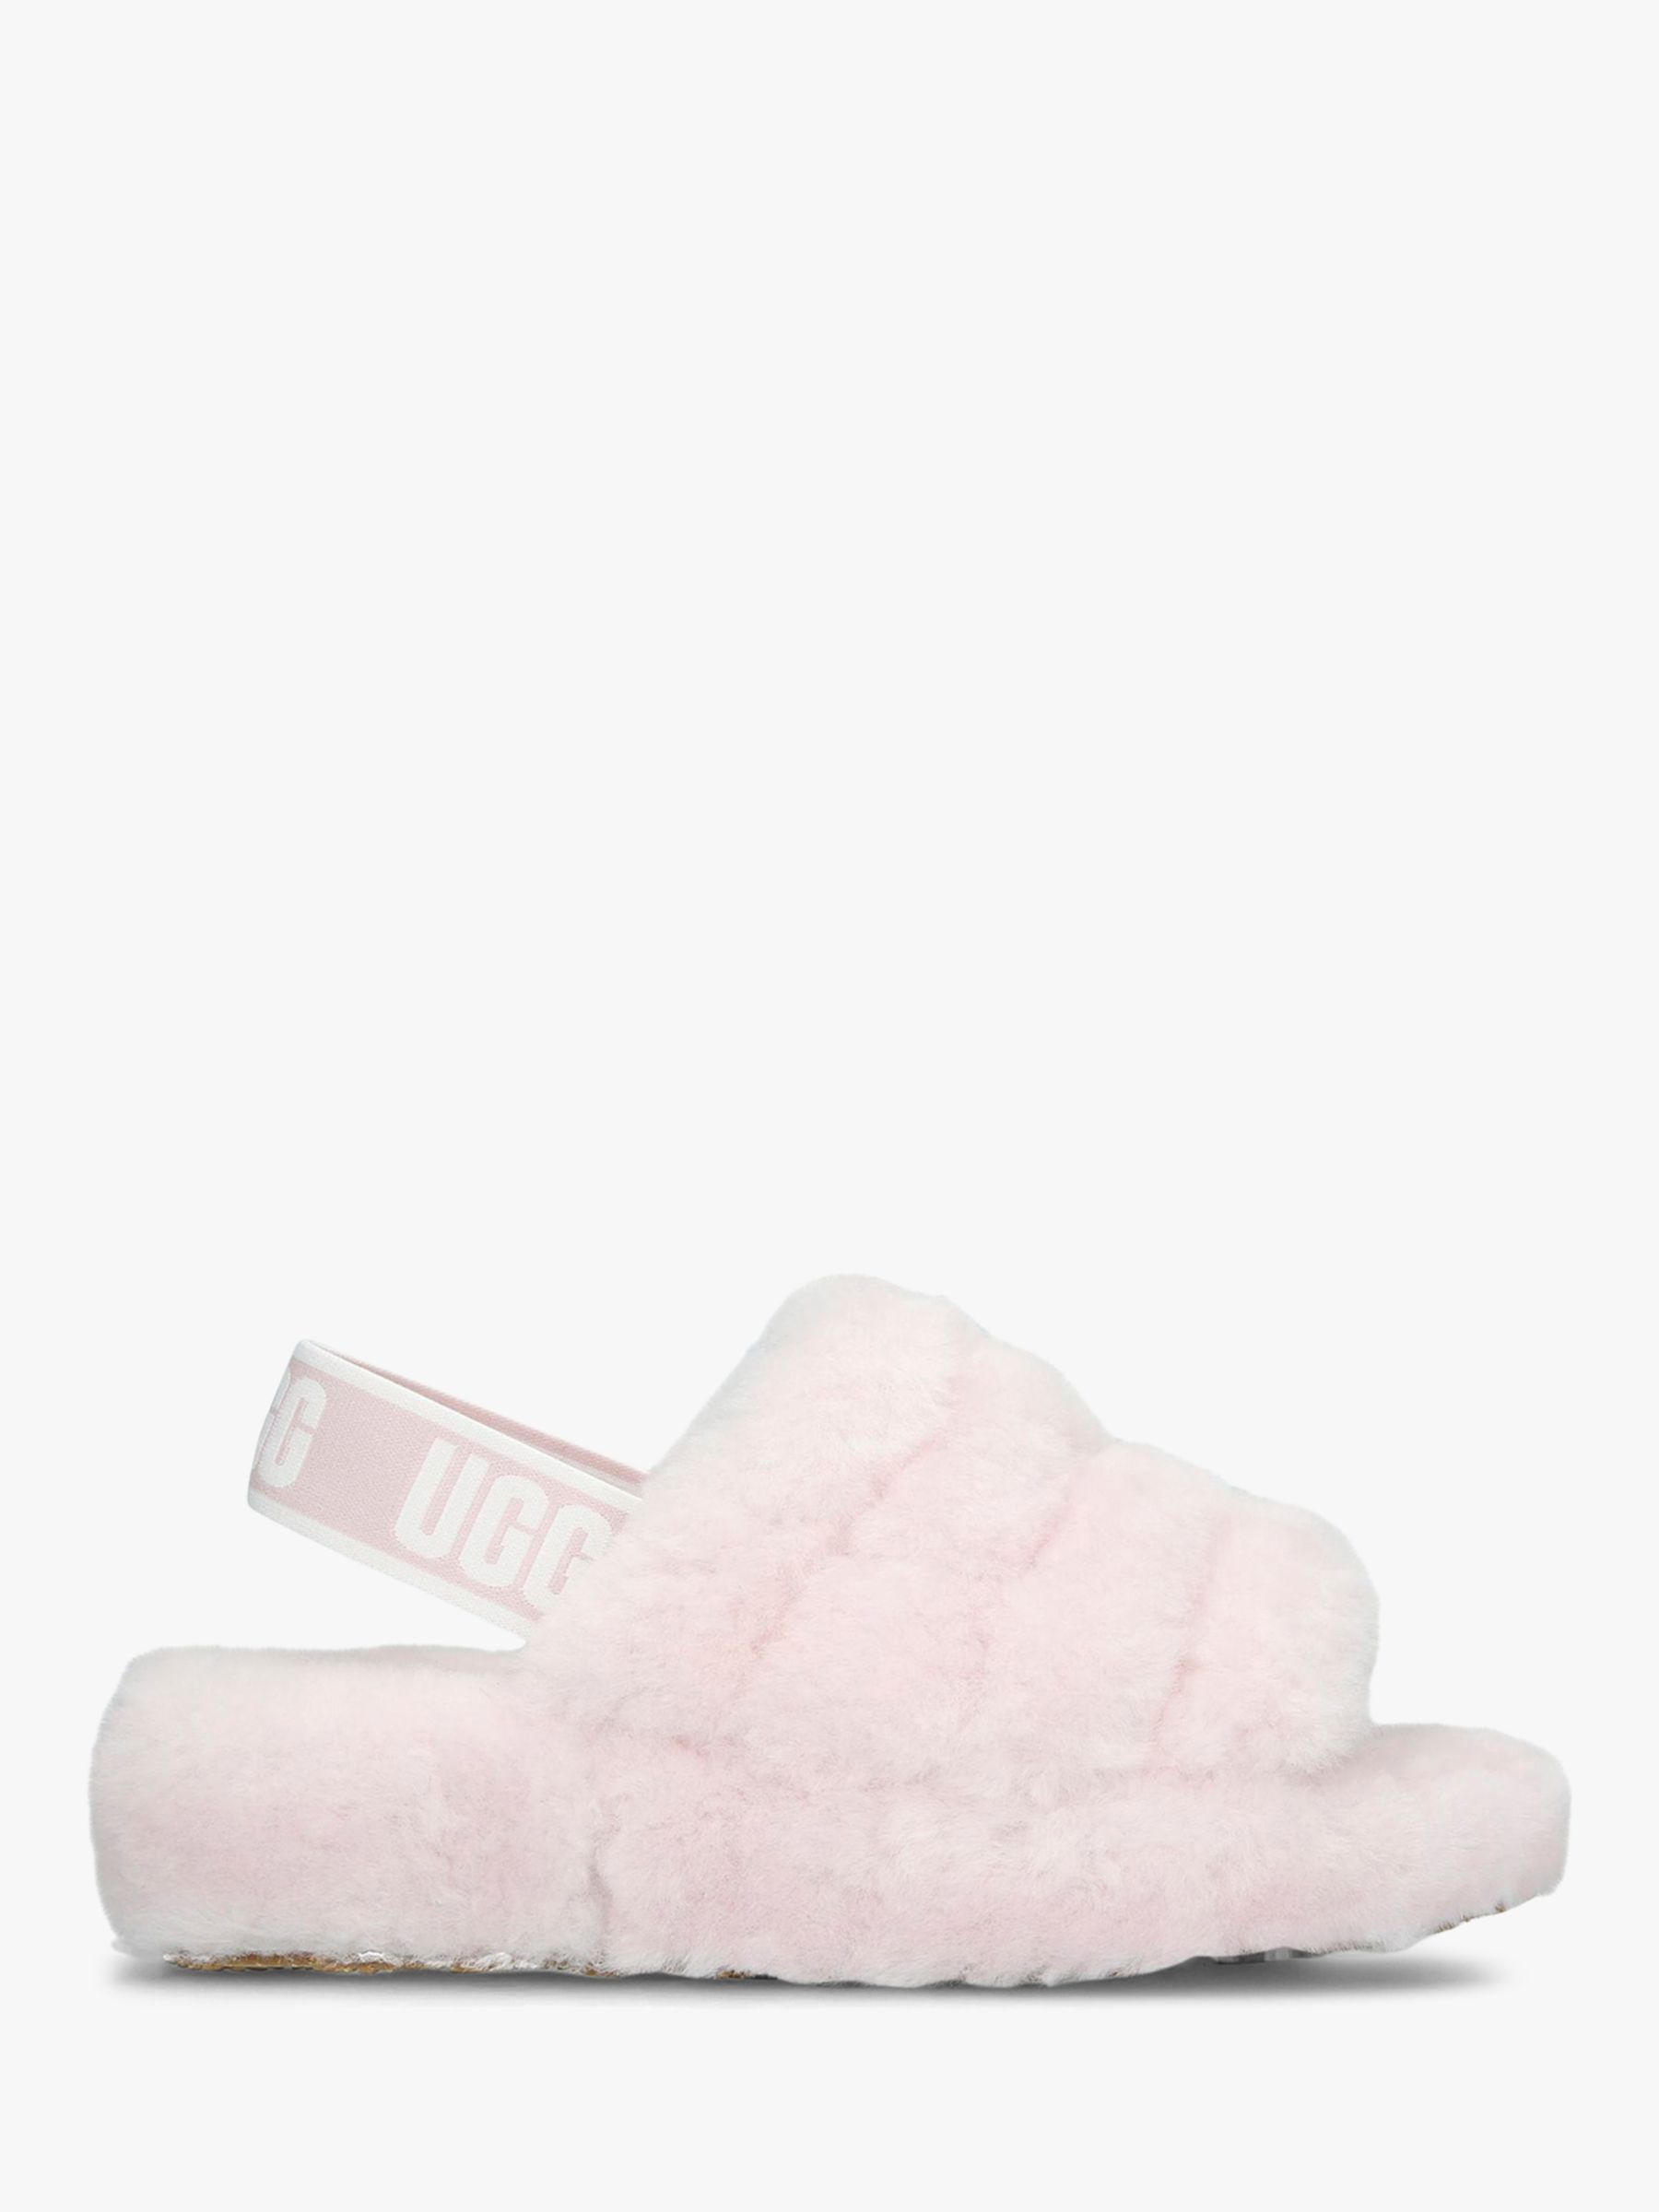 ugg slippers size 3 uk